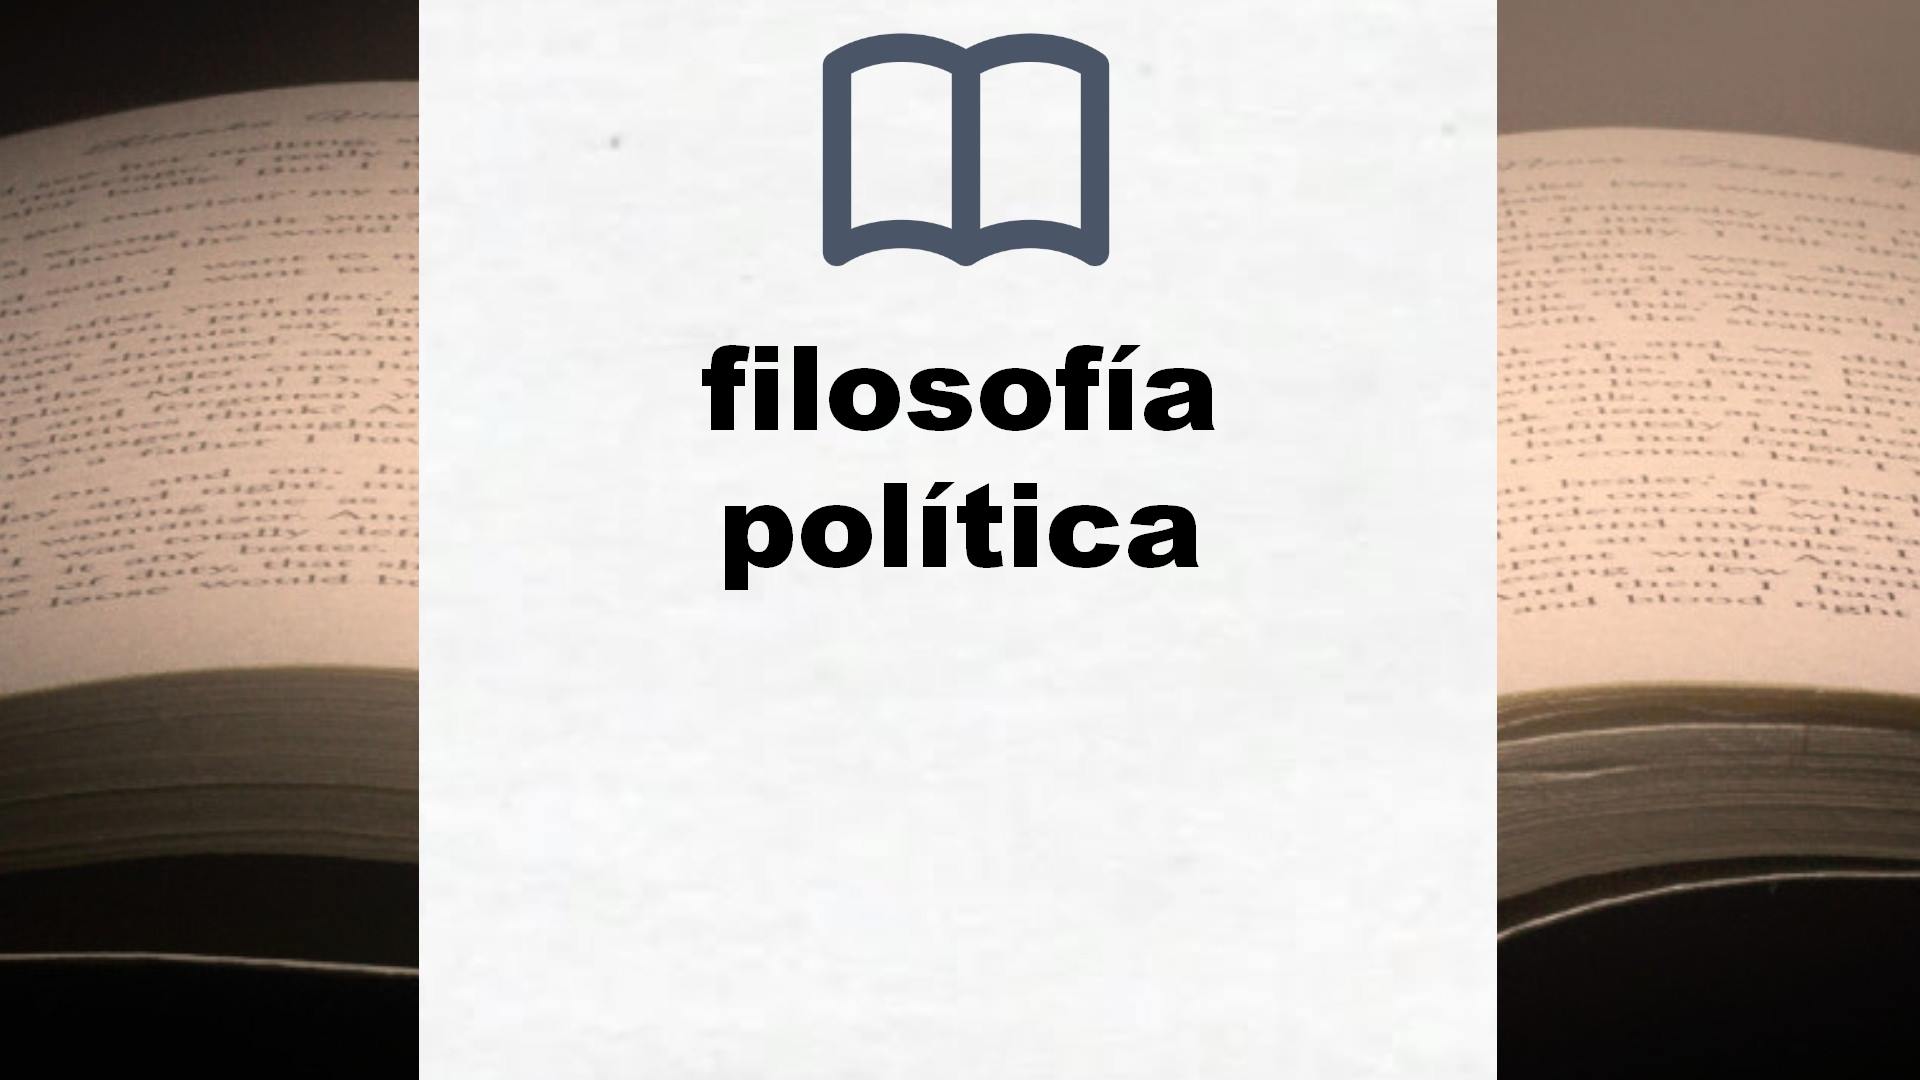 Libros sobre filosofía política